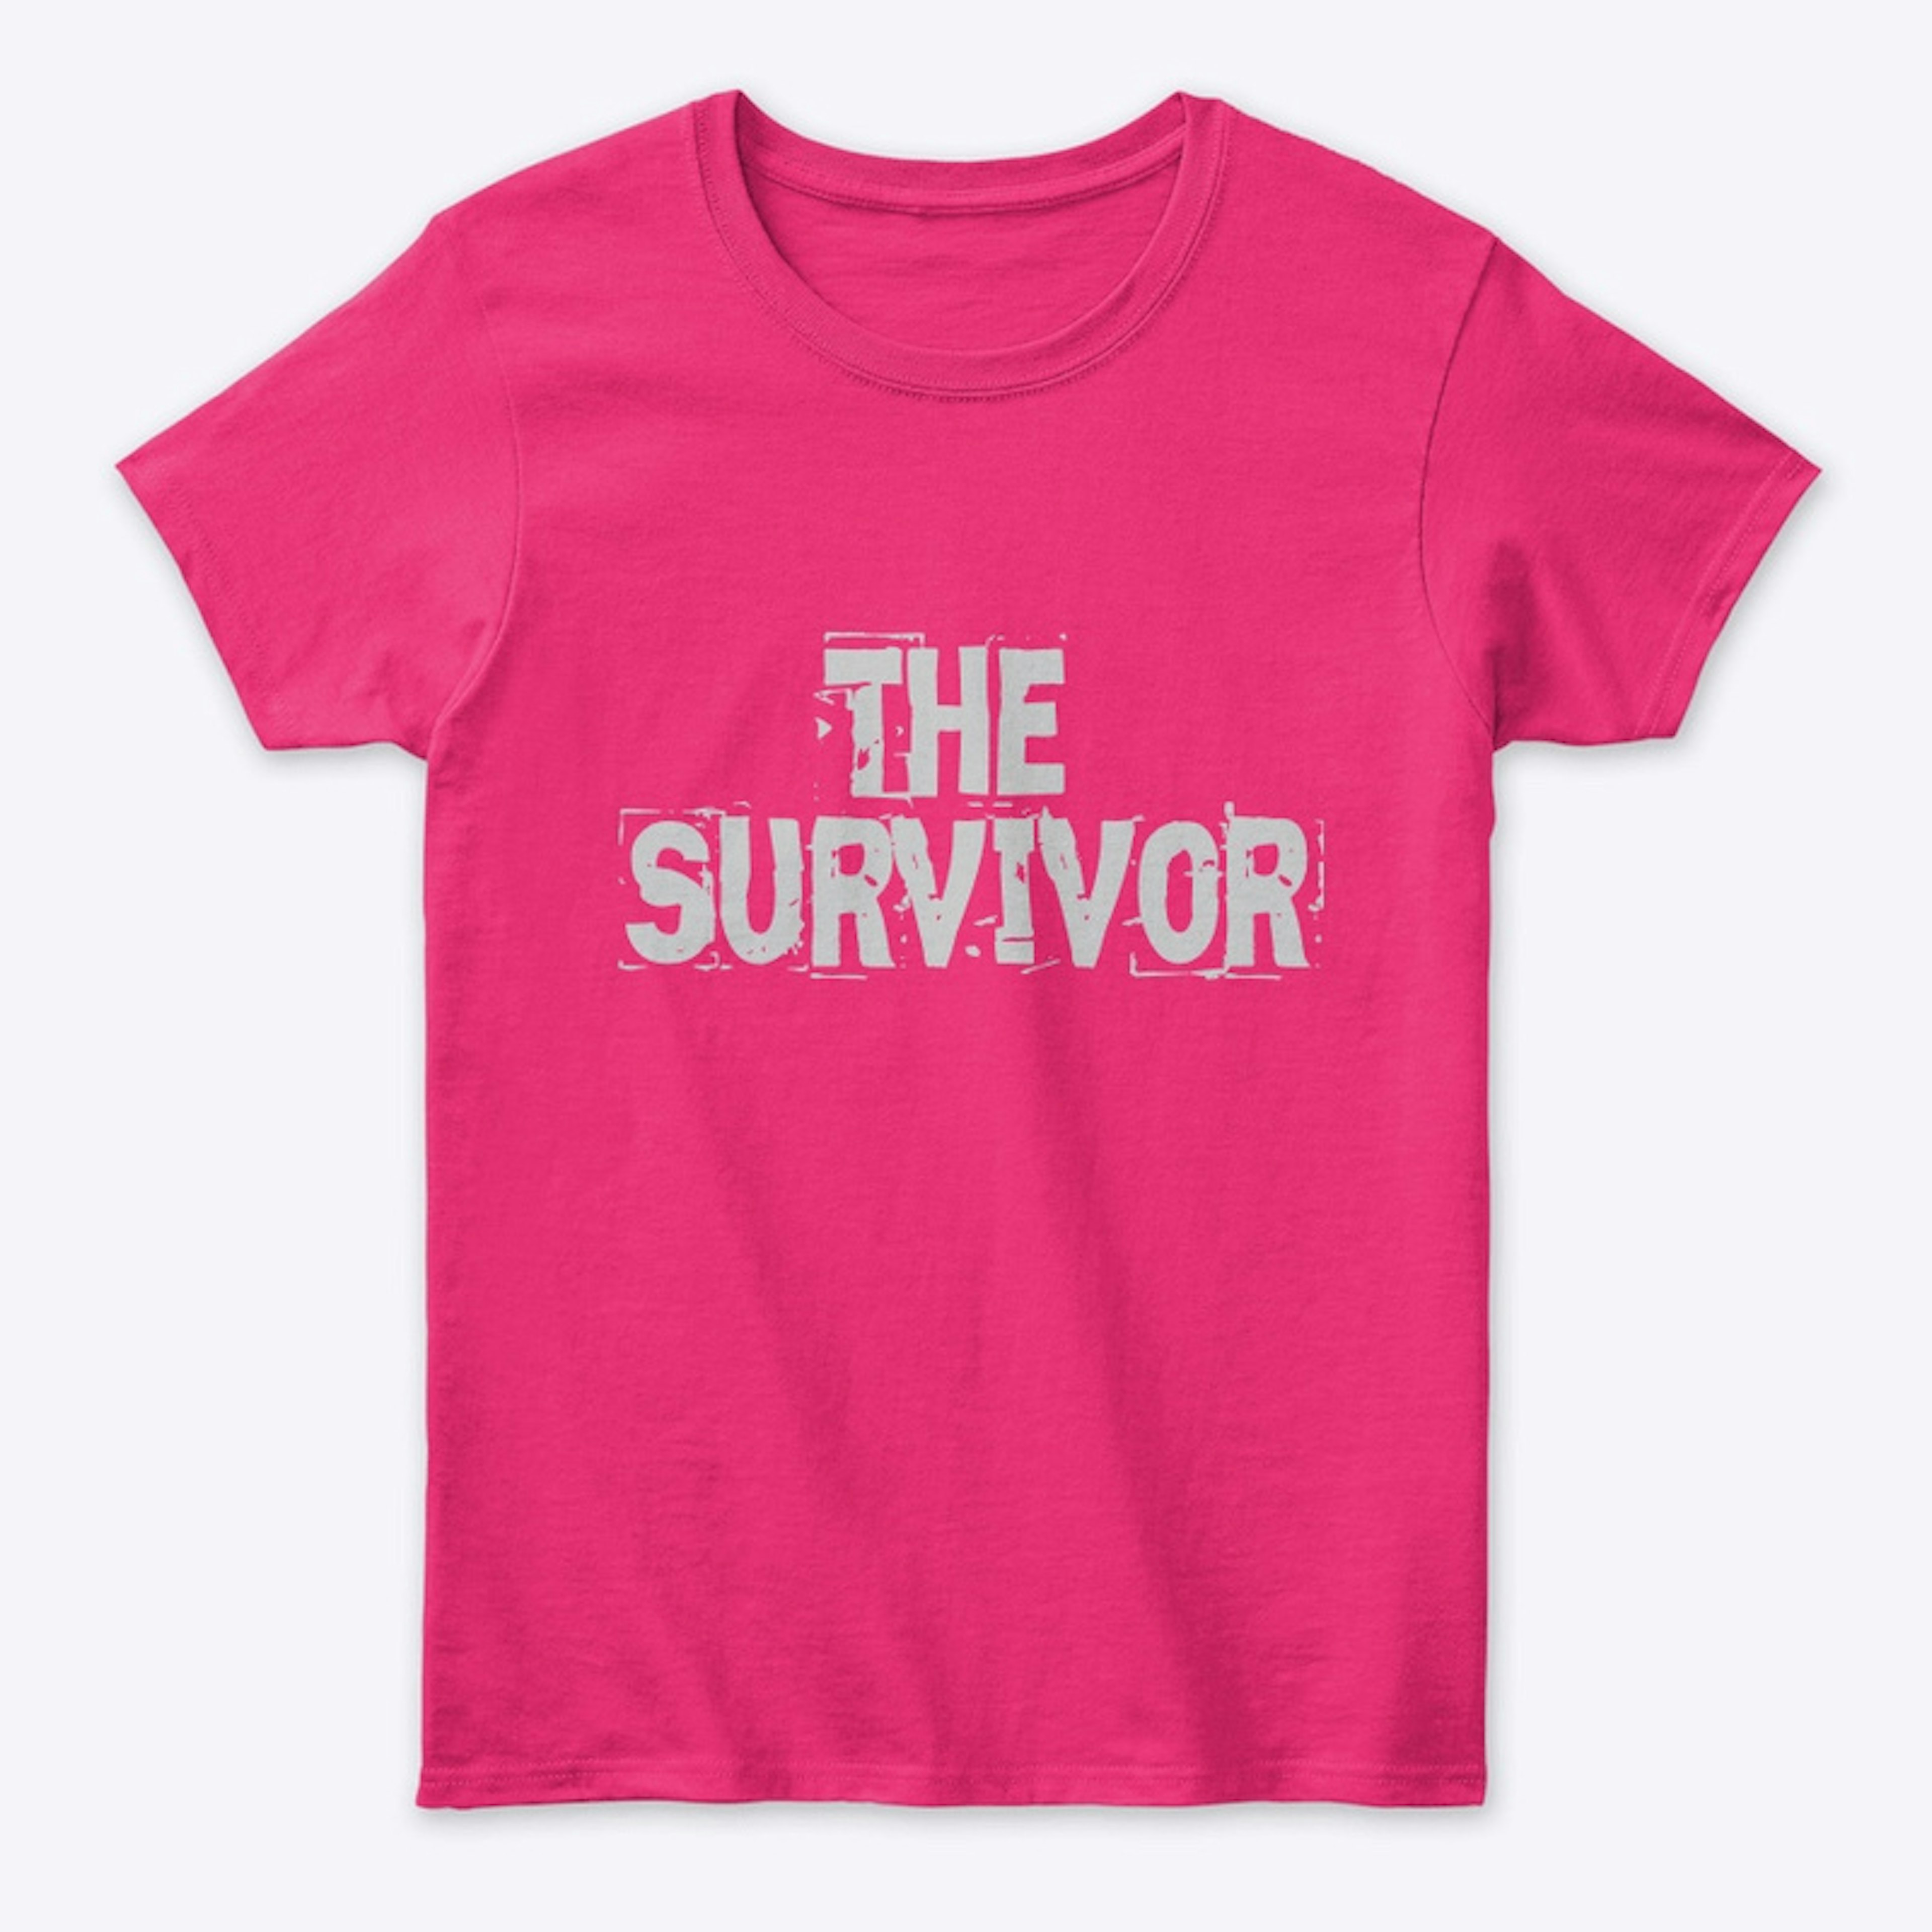 The Survivor T-Shirt